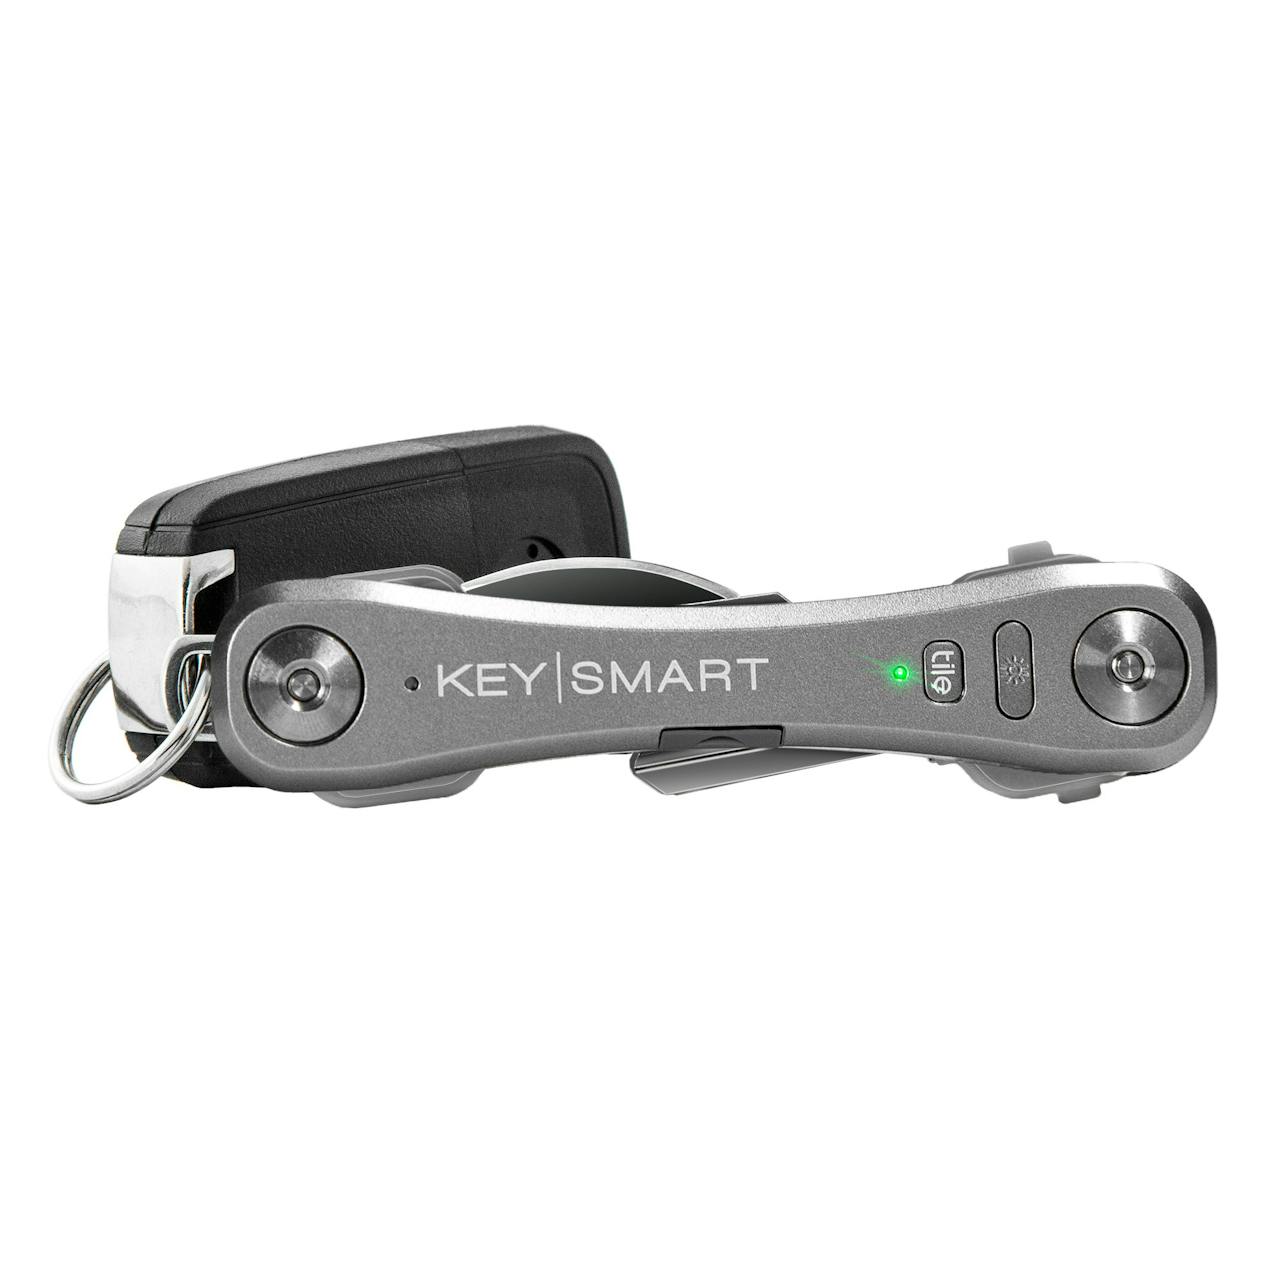 Keysmart KeySmart Pro w/ Tile Smart Location